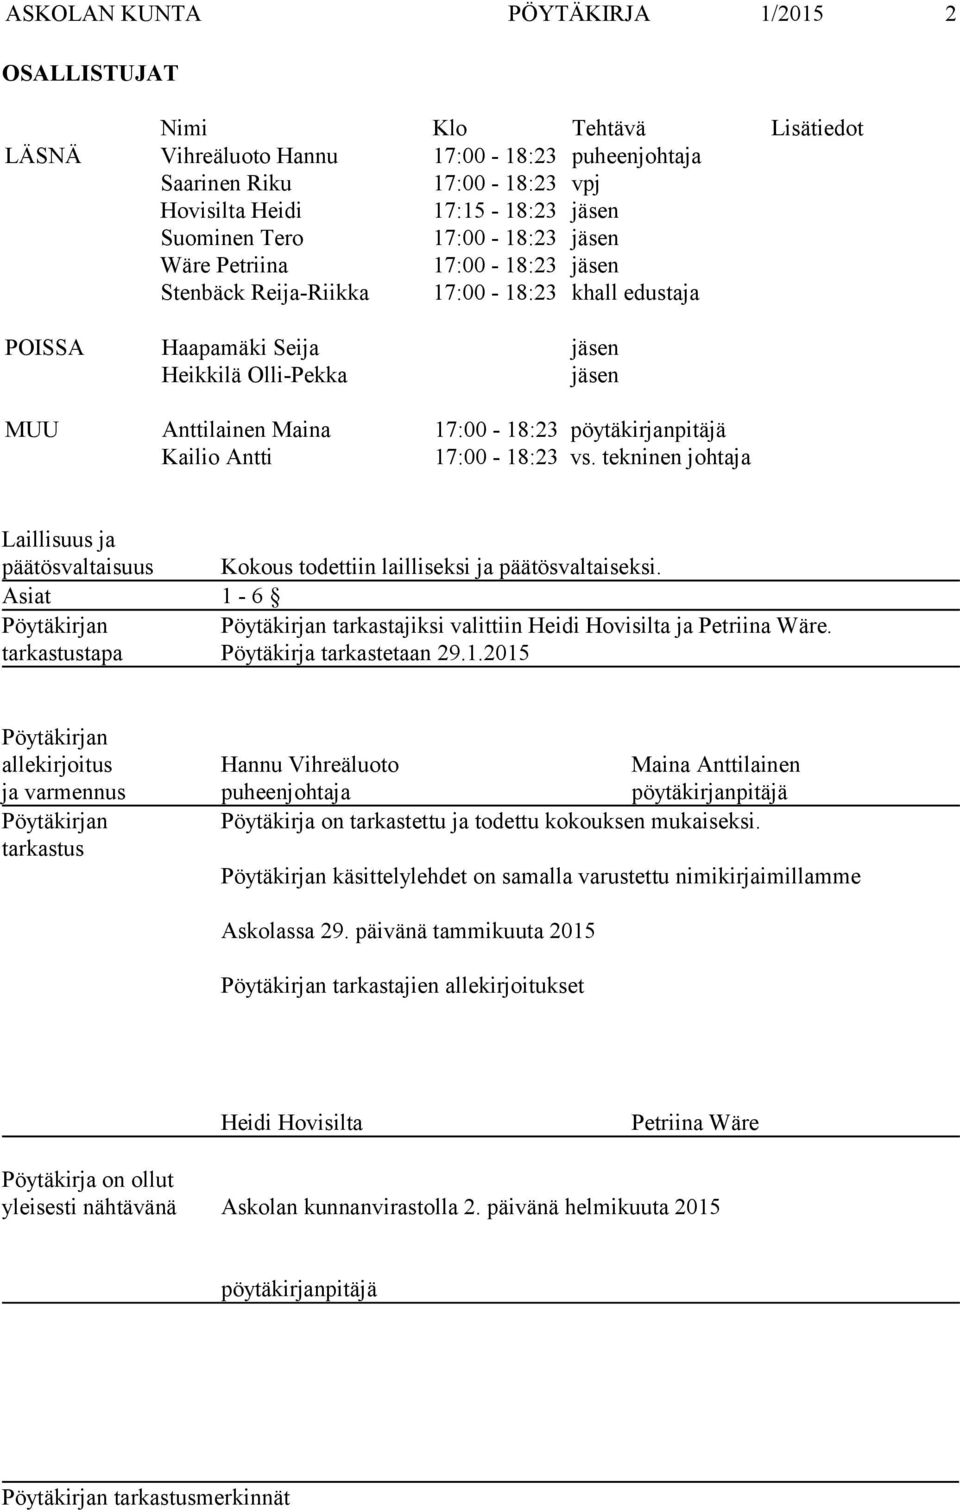 pöytäkirjanpitäjä Kailio Antti 17:00-18:23 vs. tekninen johtaja Laillisuus ja päätösvaltaisuus Kokous todettiin lailliseksi ja päätösvaltaiseksi.